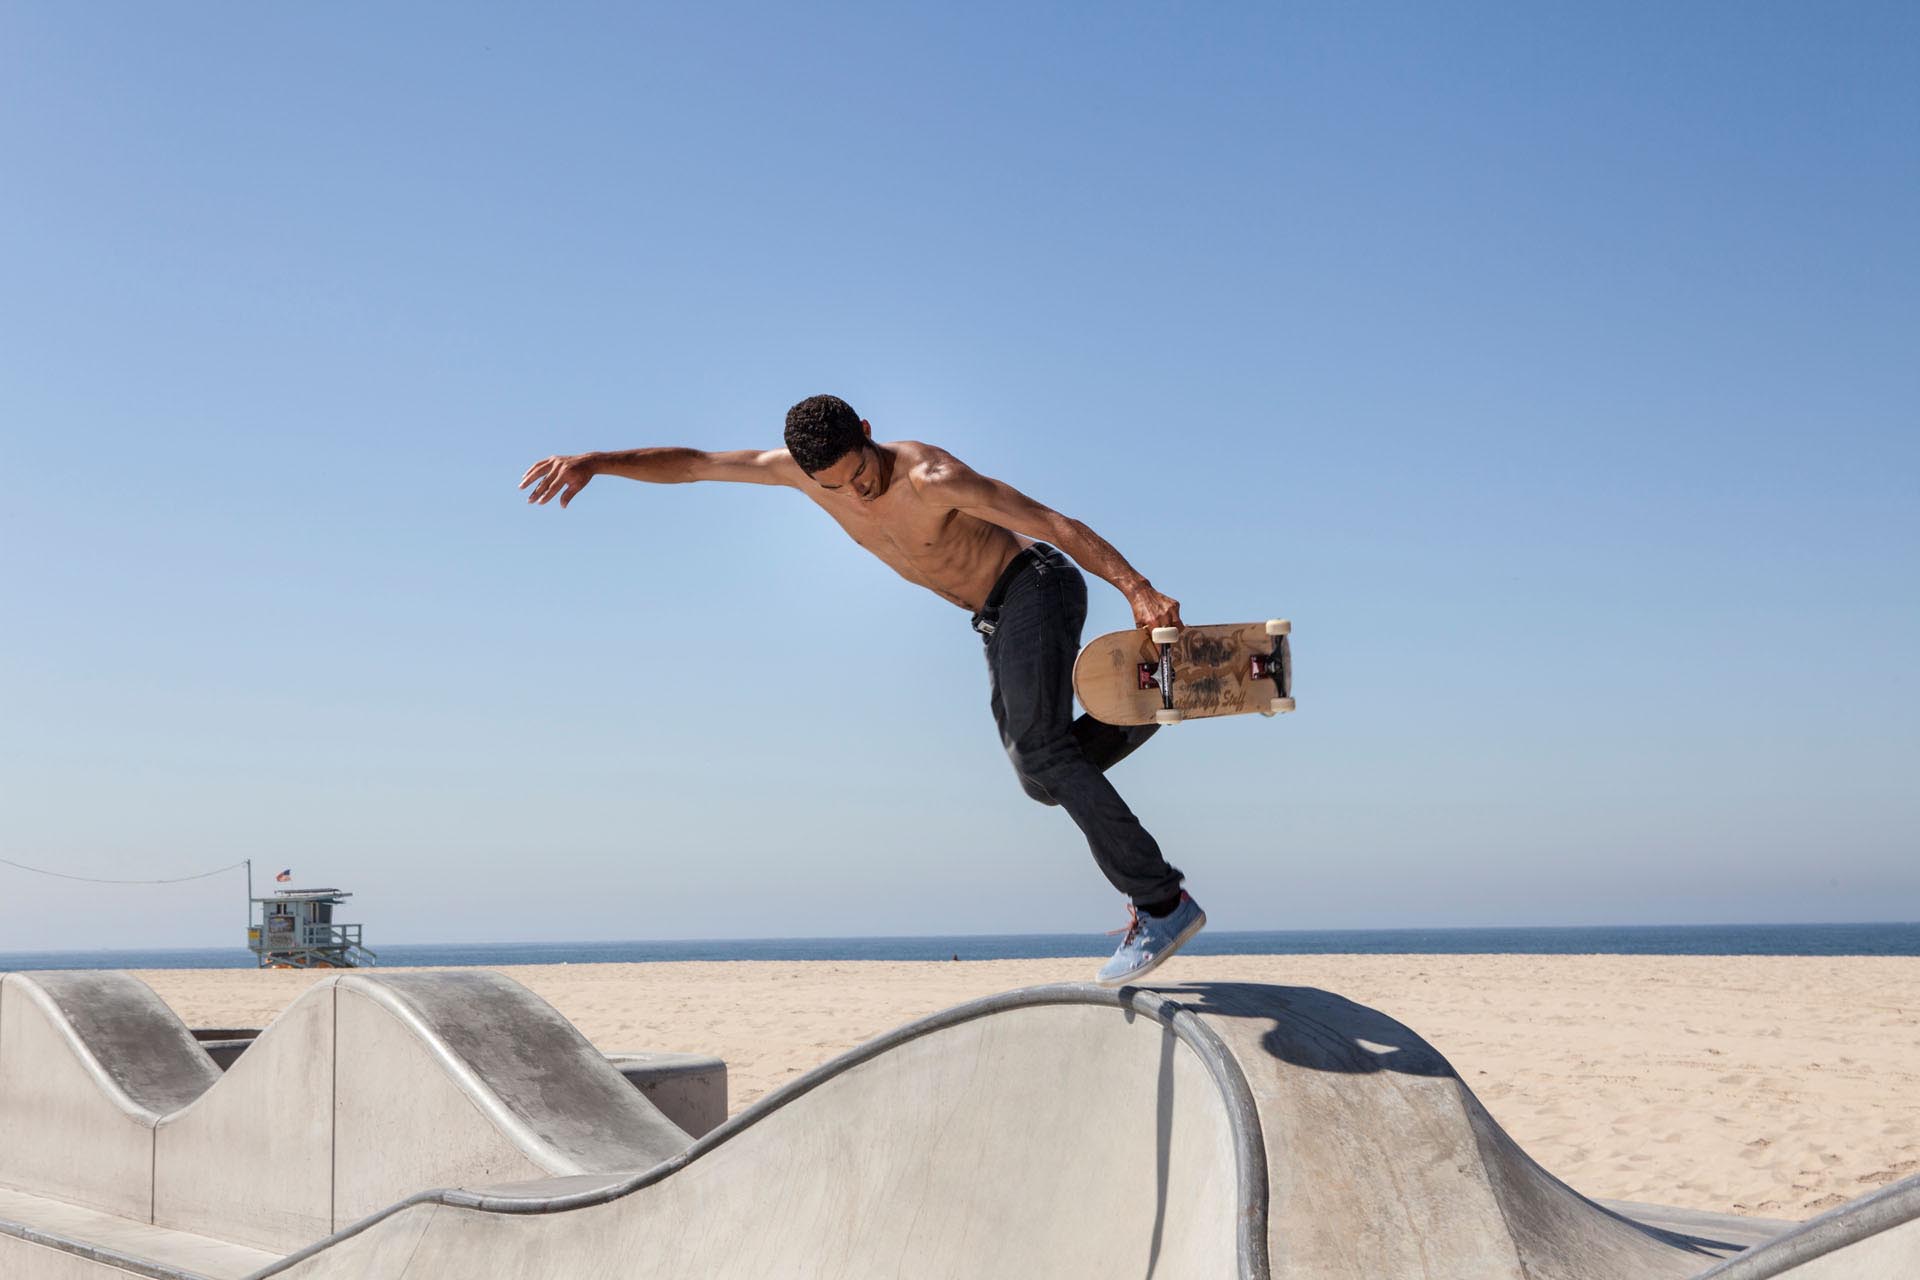 September 2012 - Venice Beach, USA: Skater in the skate park in Venice Beach in Los Angeles, California, USA.